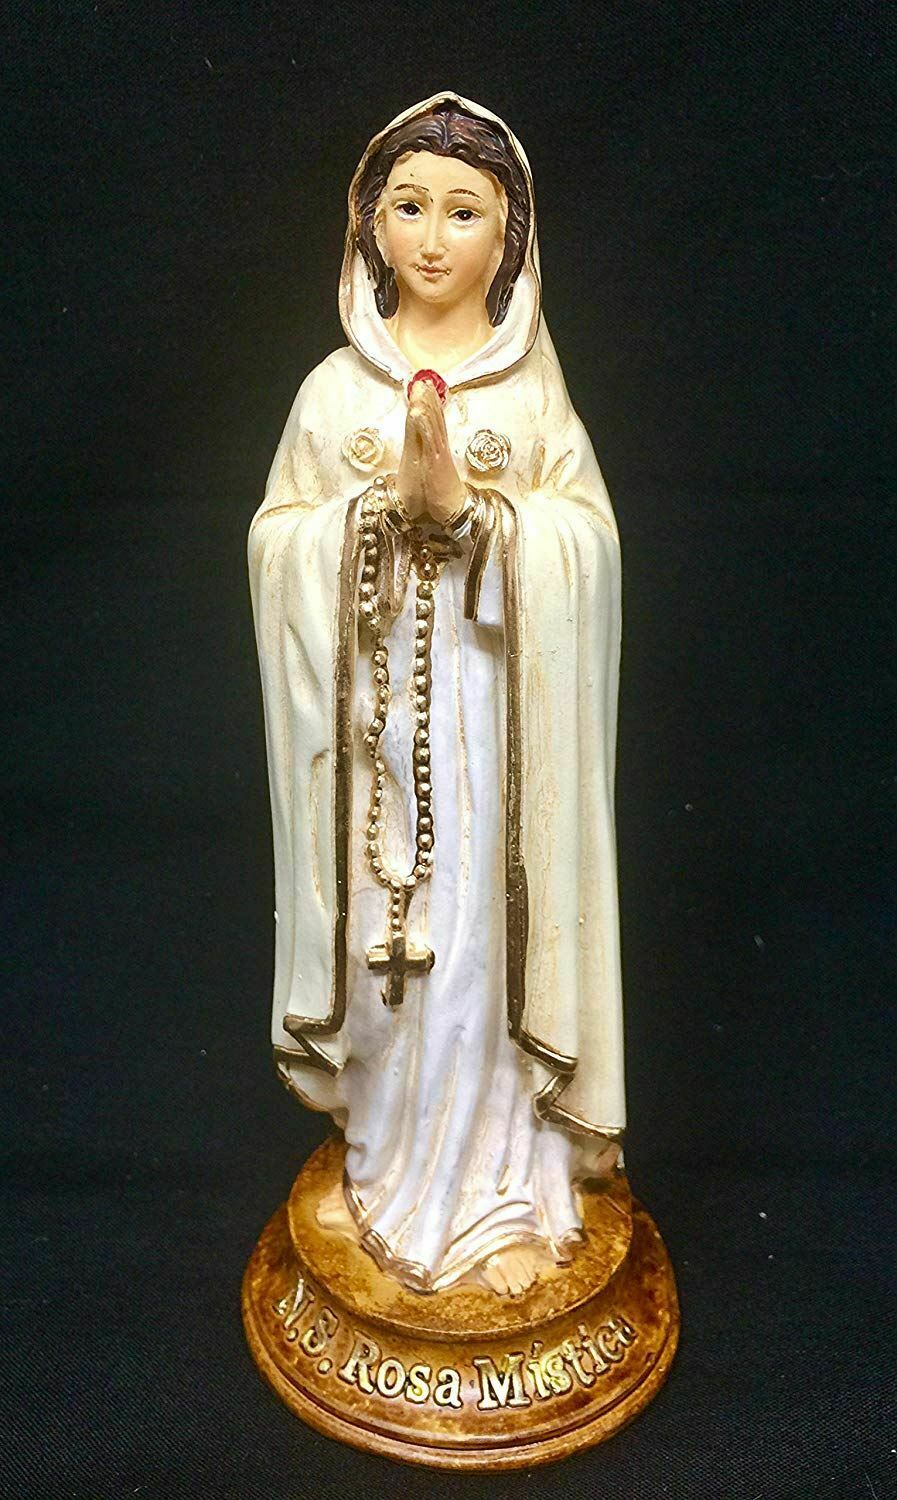 Rosa Mystica Mystic Rose Statue Mary Catholic Sculpture Religious Ornament